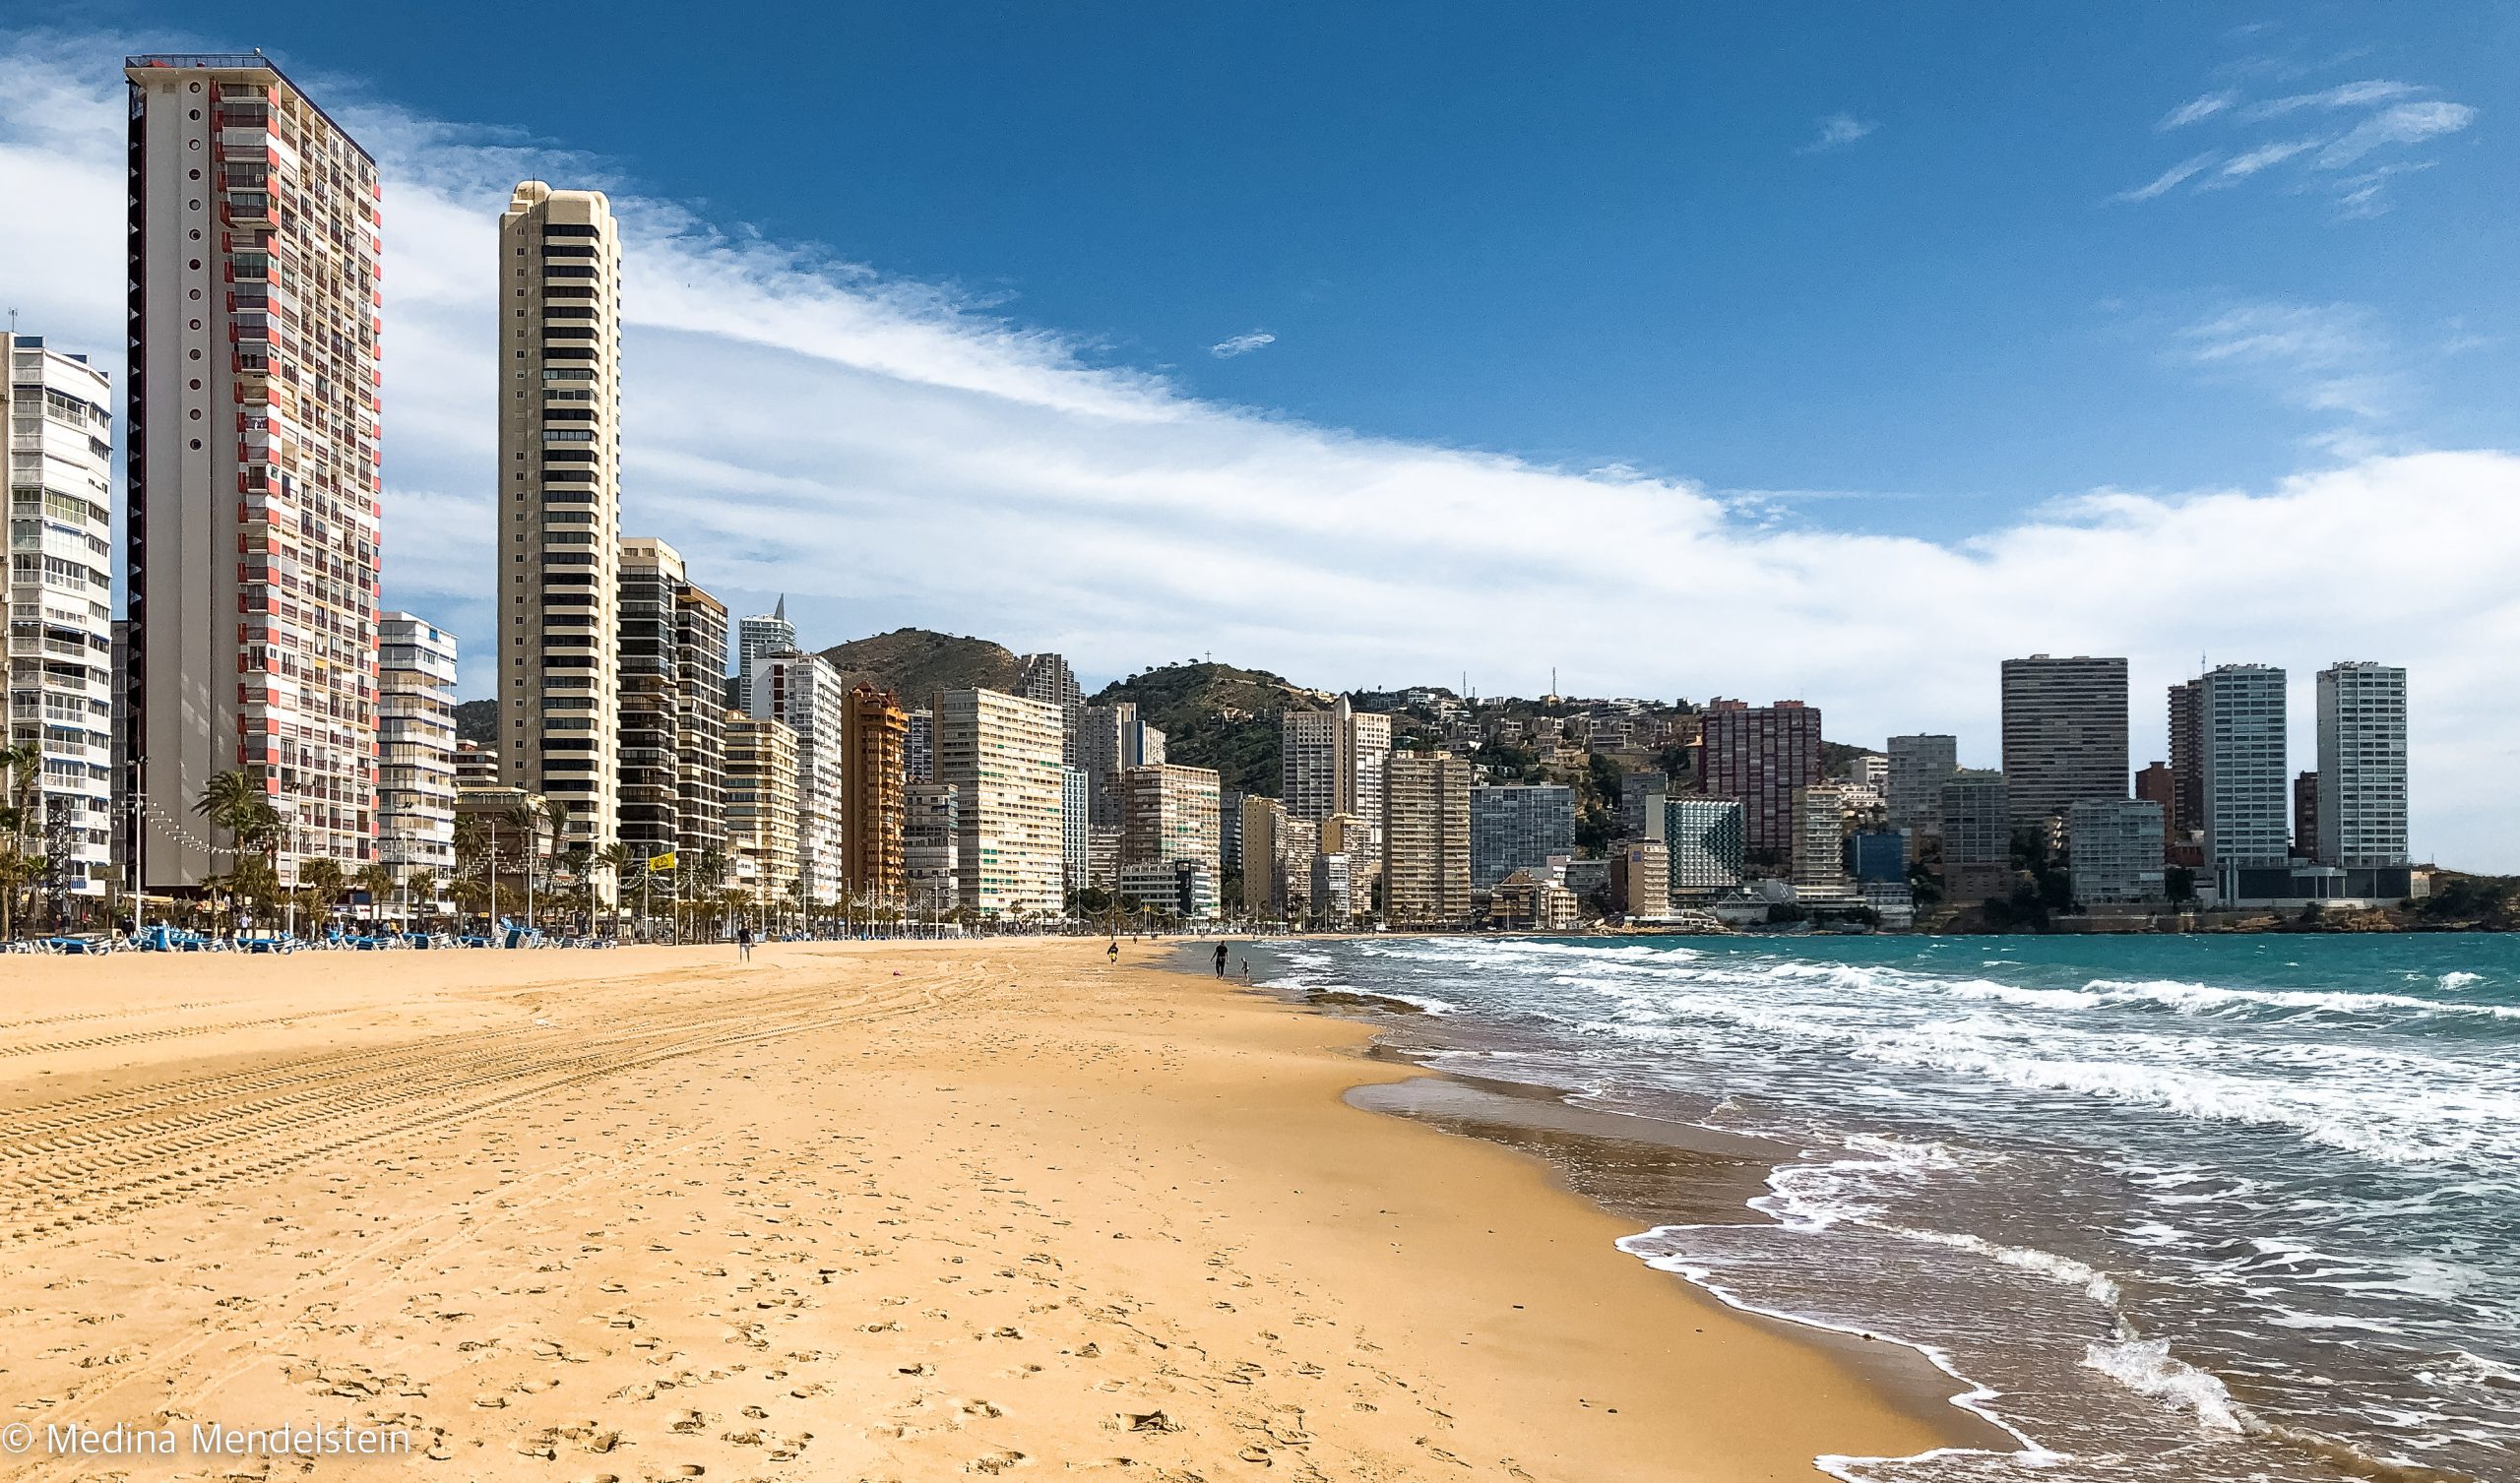 Fotografie aus Europa, Benidorm in Spanien: Hochhäuser stehen dicht an dicht am Strand.